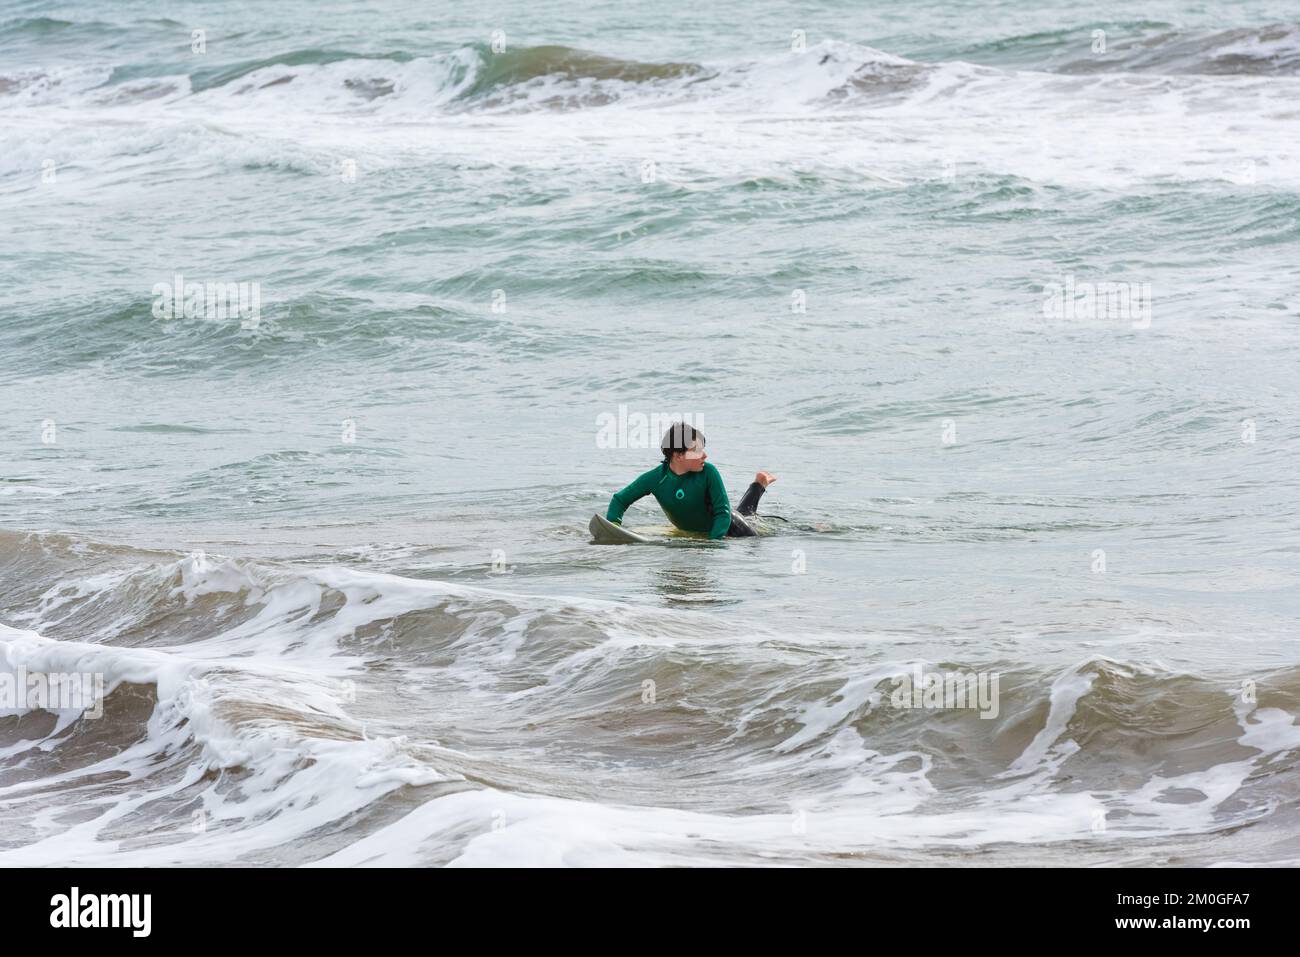 Castelldefels, Barcelona, Spanien - 9. Januar 2016: Ein Junge zwischen 10 und 12 Jahren surft allein am Ufer, an einem kalten und bewölkten Wintertag Stockfoto